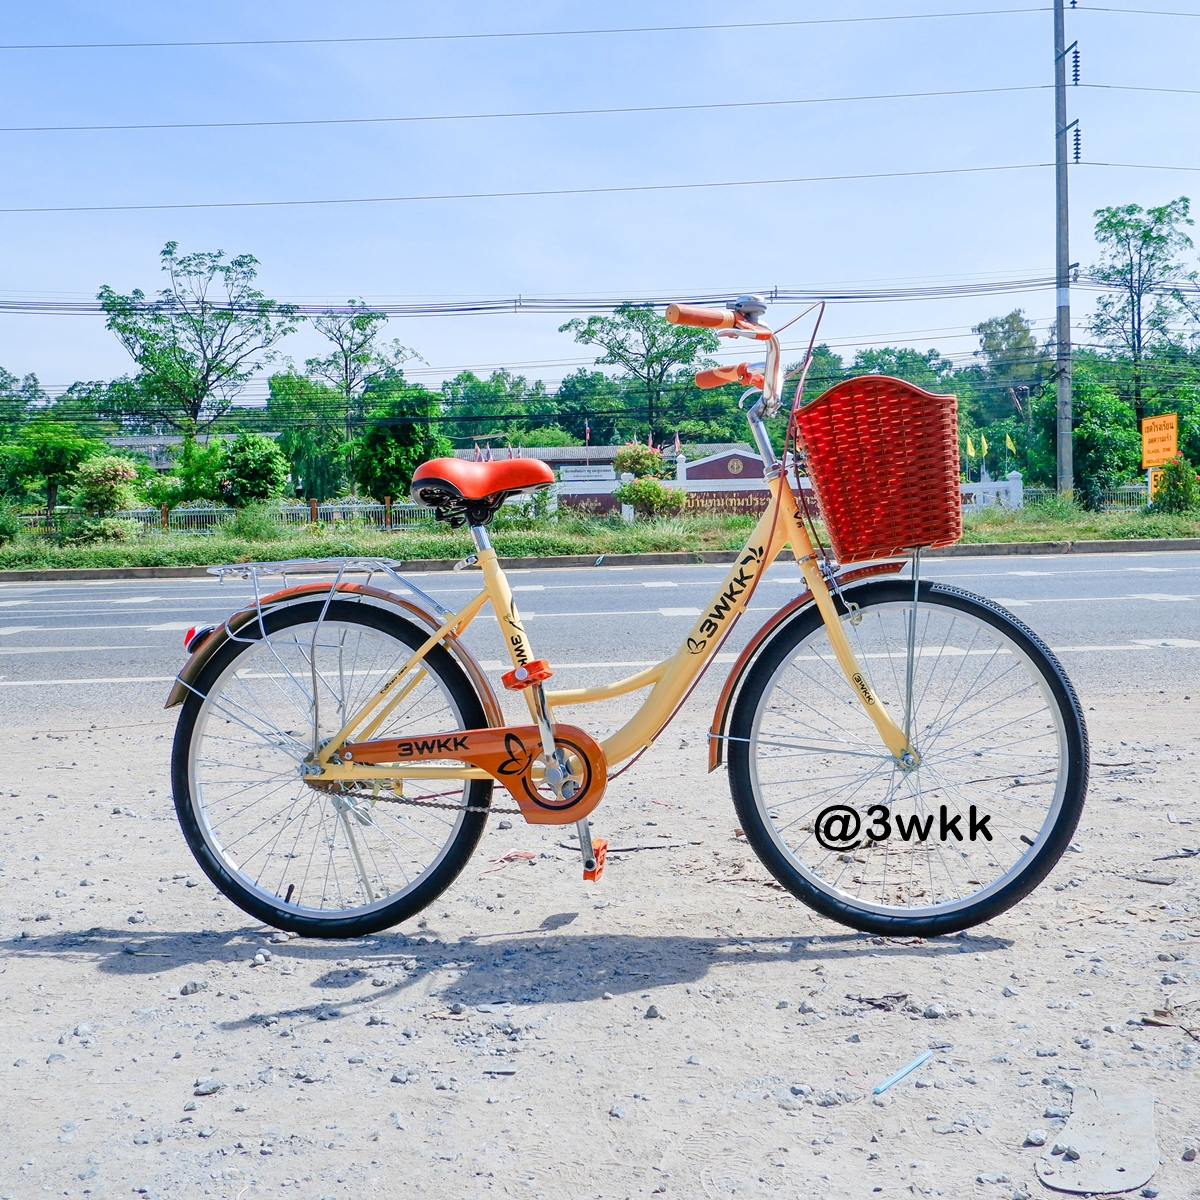 จักรยานแม่บ้าน 3wkk รุ่น วานิลลา ขนาด 20 นิ้ว วงล้ออัลลอยด์ จานดูด ปั่นเบากว่ารุ่นปกติ สไตล์ญี่ปุ่น